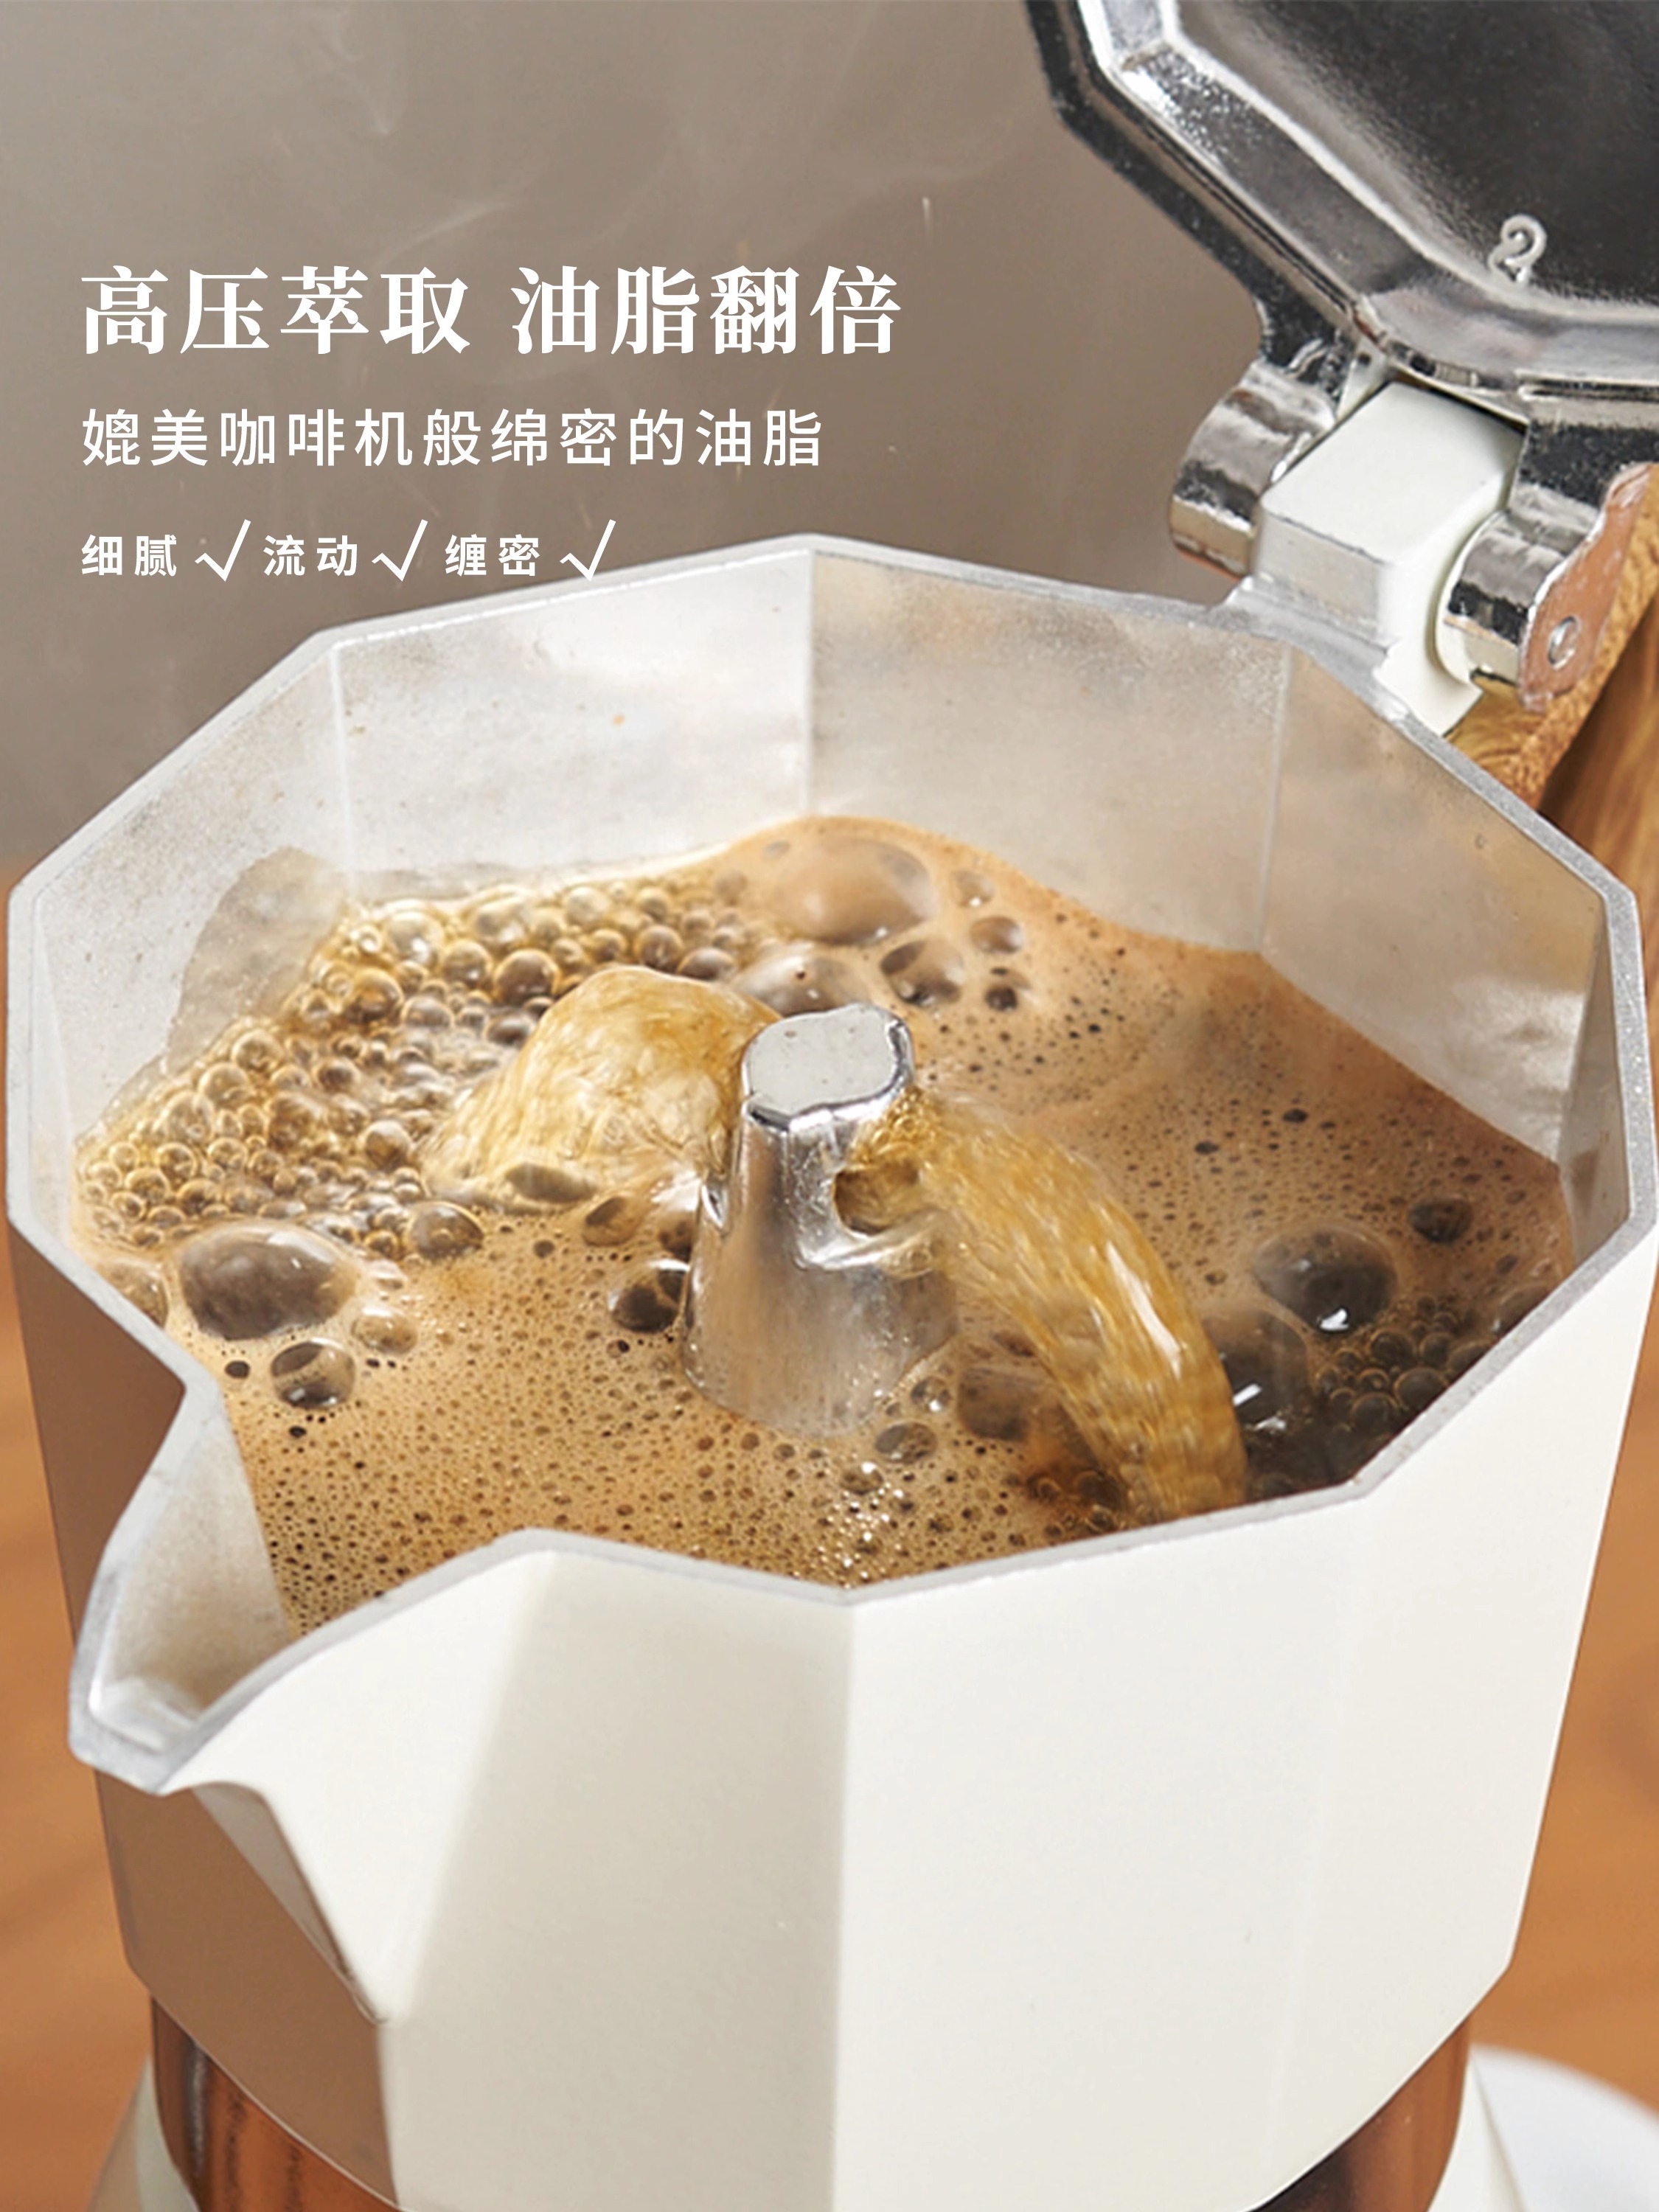 摩卡壺煮咖啡機家用小型電陶爐雙閥手衝咖啡壺套裝品牌肆月 (3.5折)